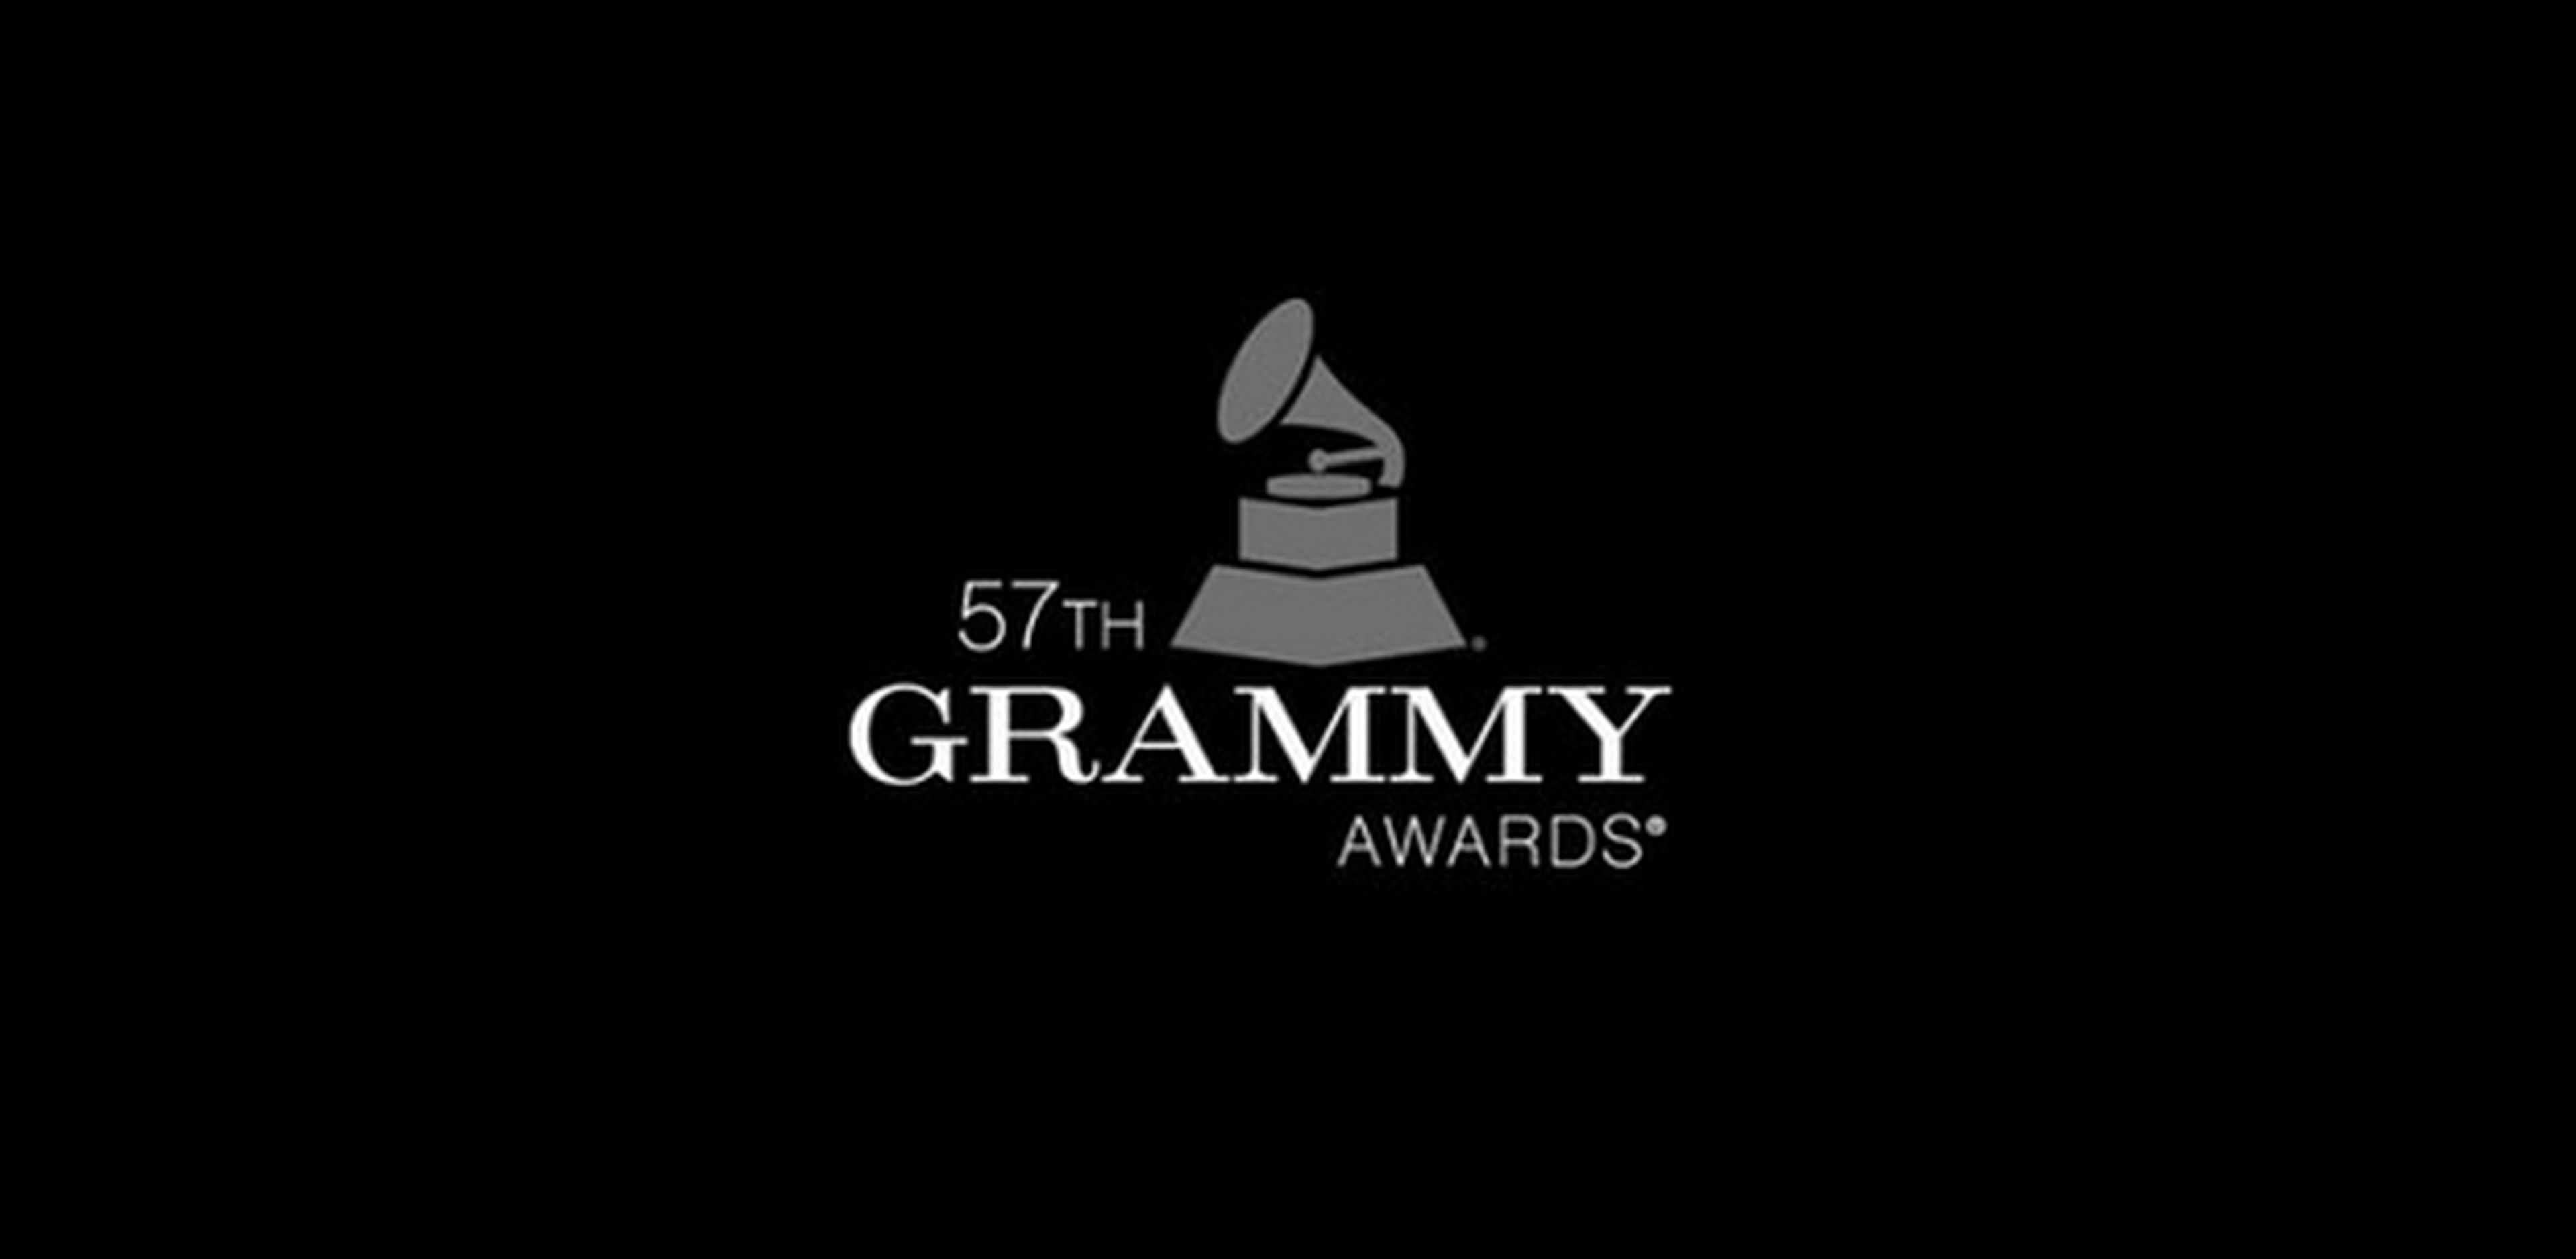 Dónde ver online Grammys 2015